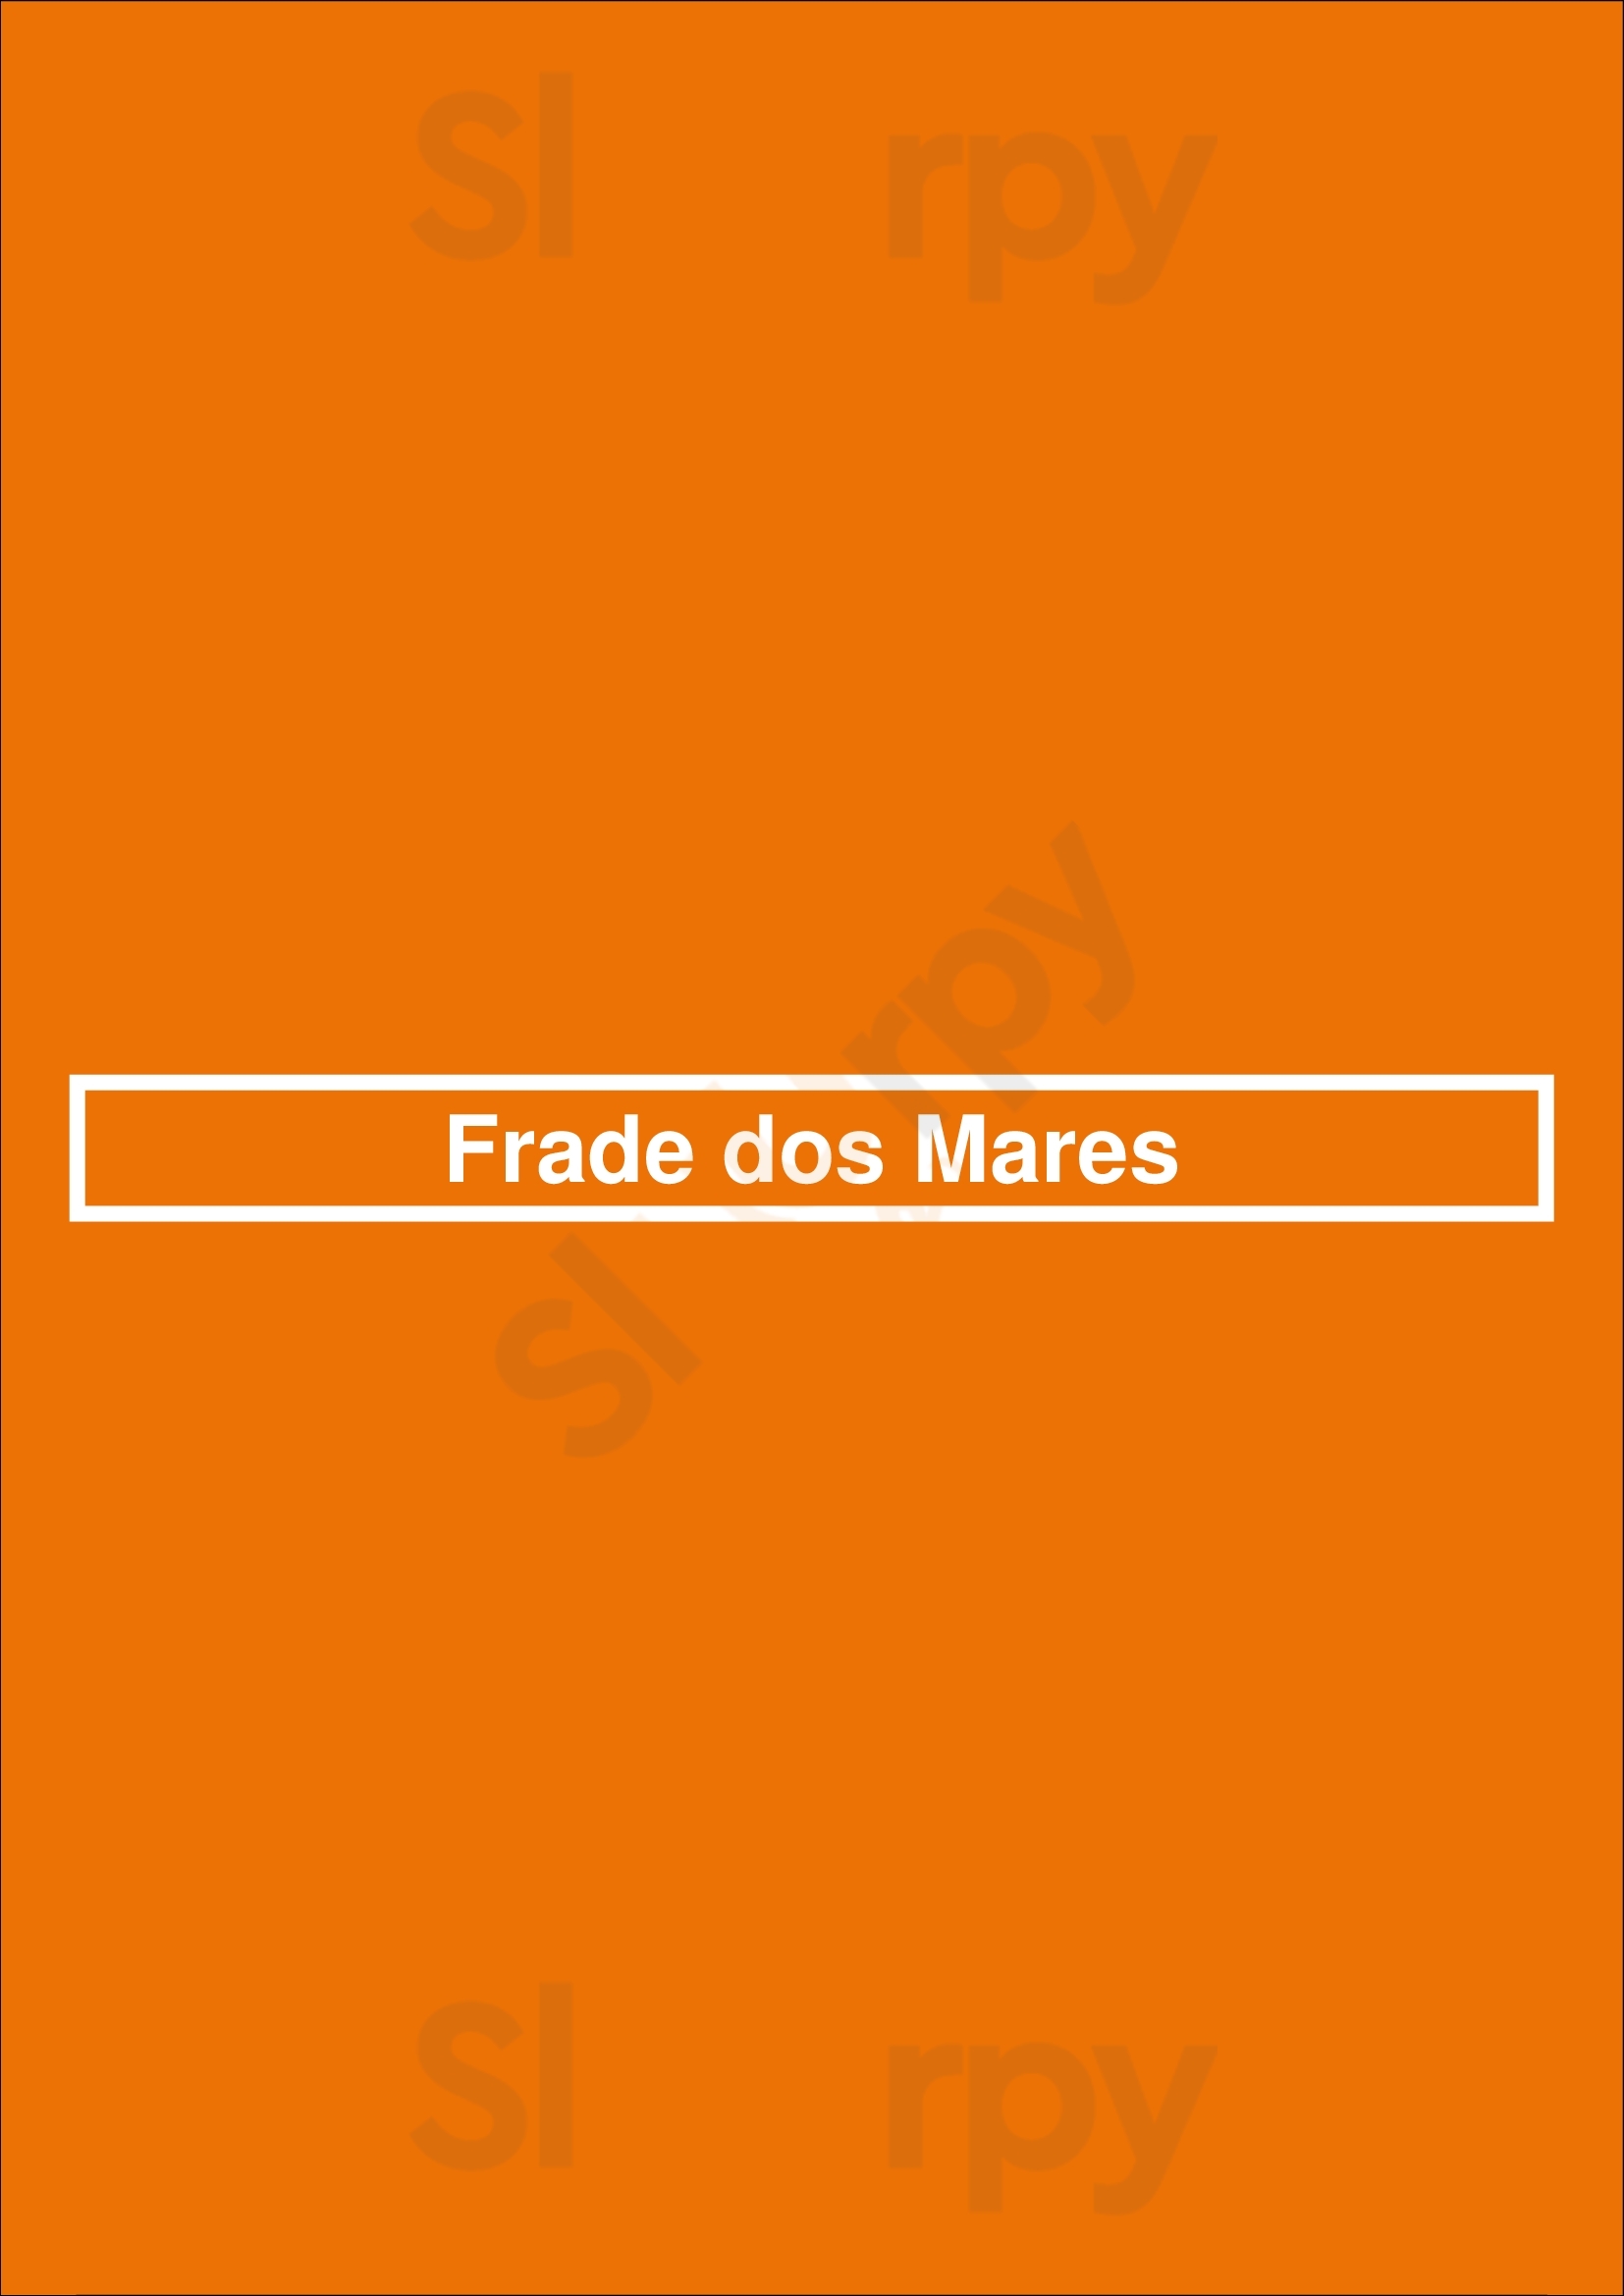 Frade Dos Mares Lisboa Menu - 1